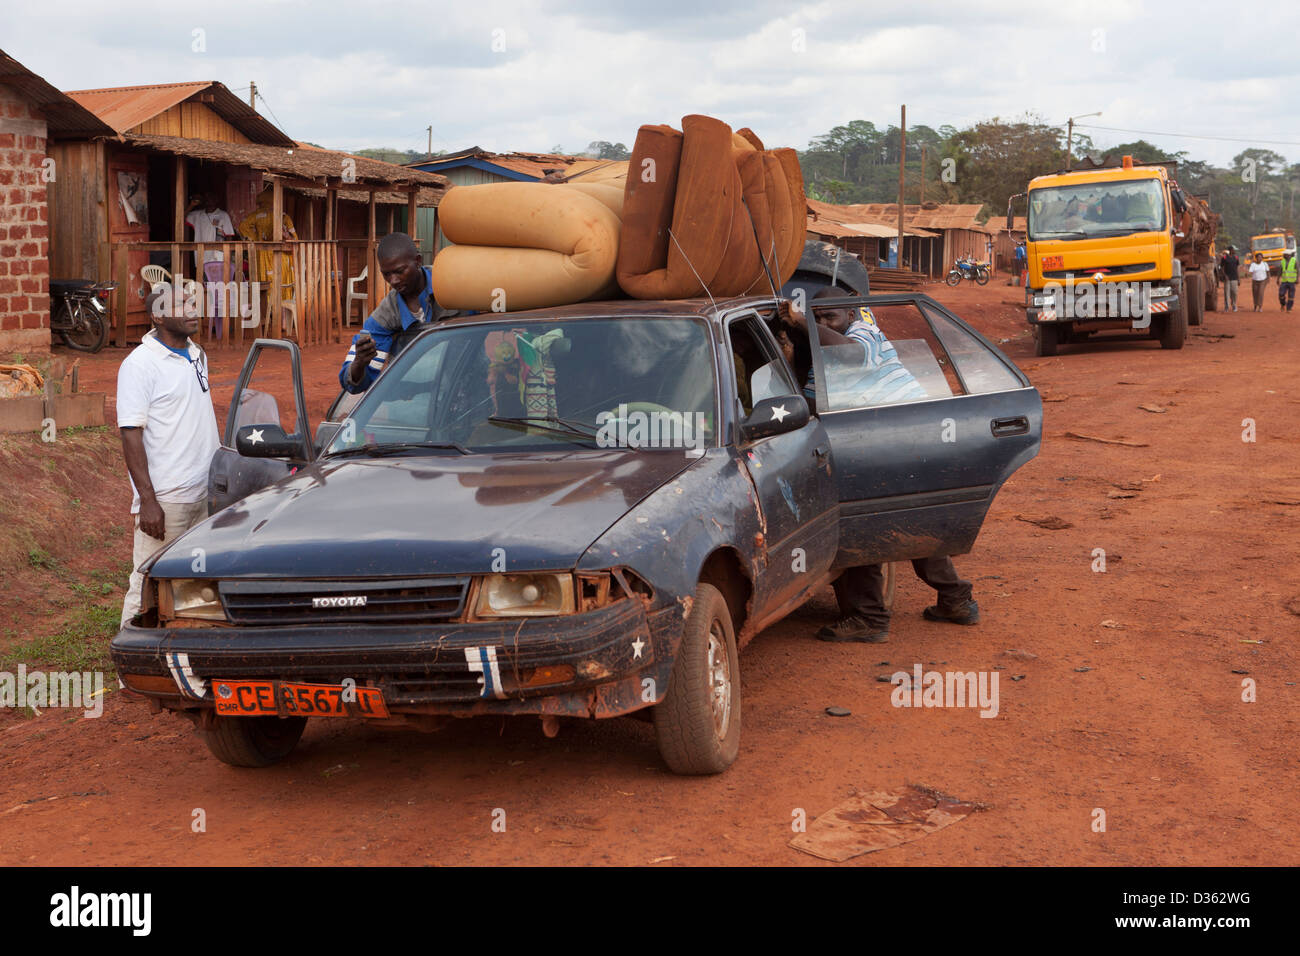 Camerún, 2 de octubre de 2012: Un taxi carga con pasajeros y mercancías en un pequeño pueblo en el bosque. Foto de stock